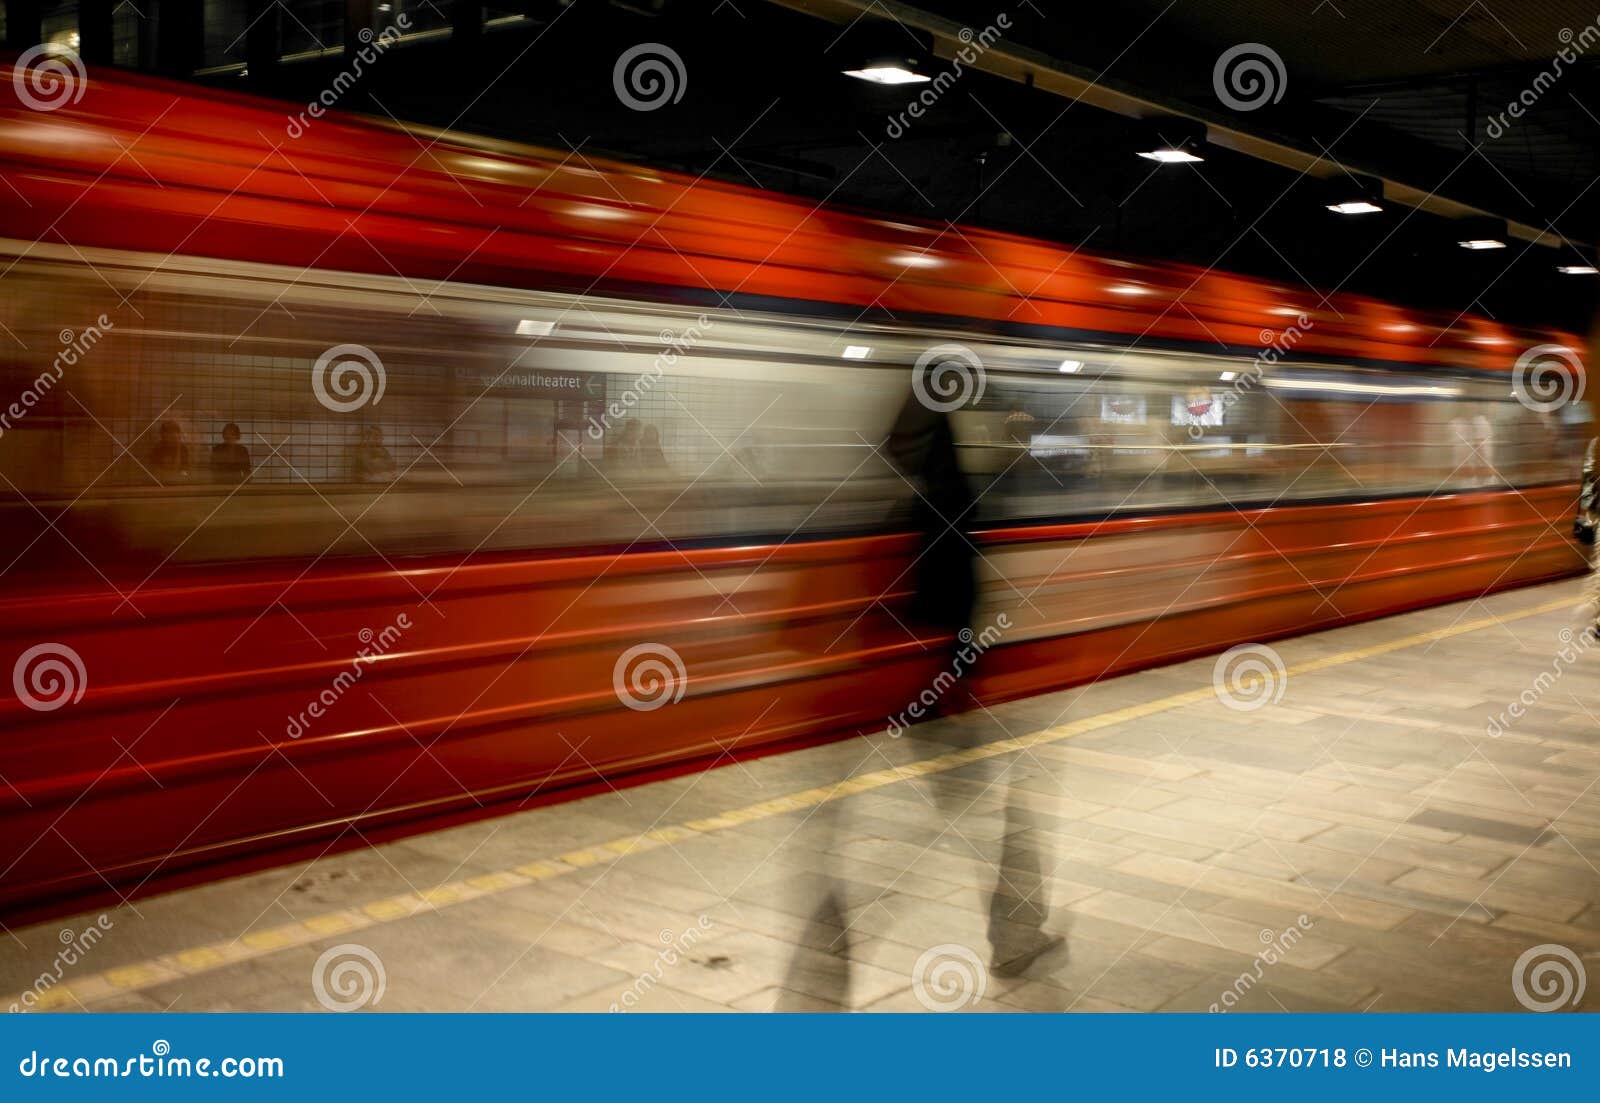 underground train in oslo